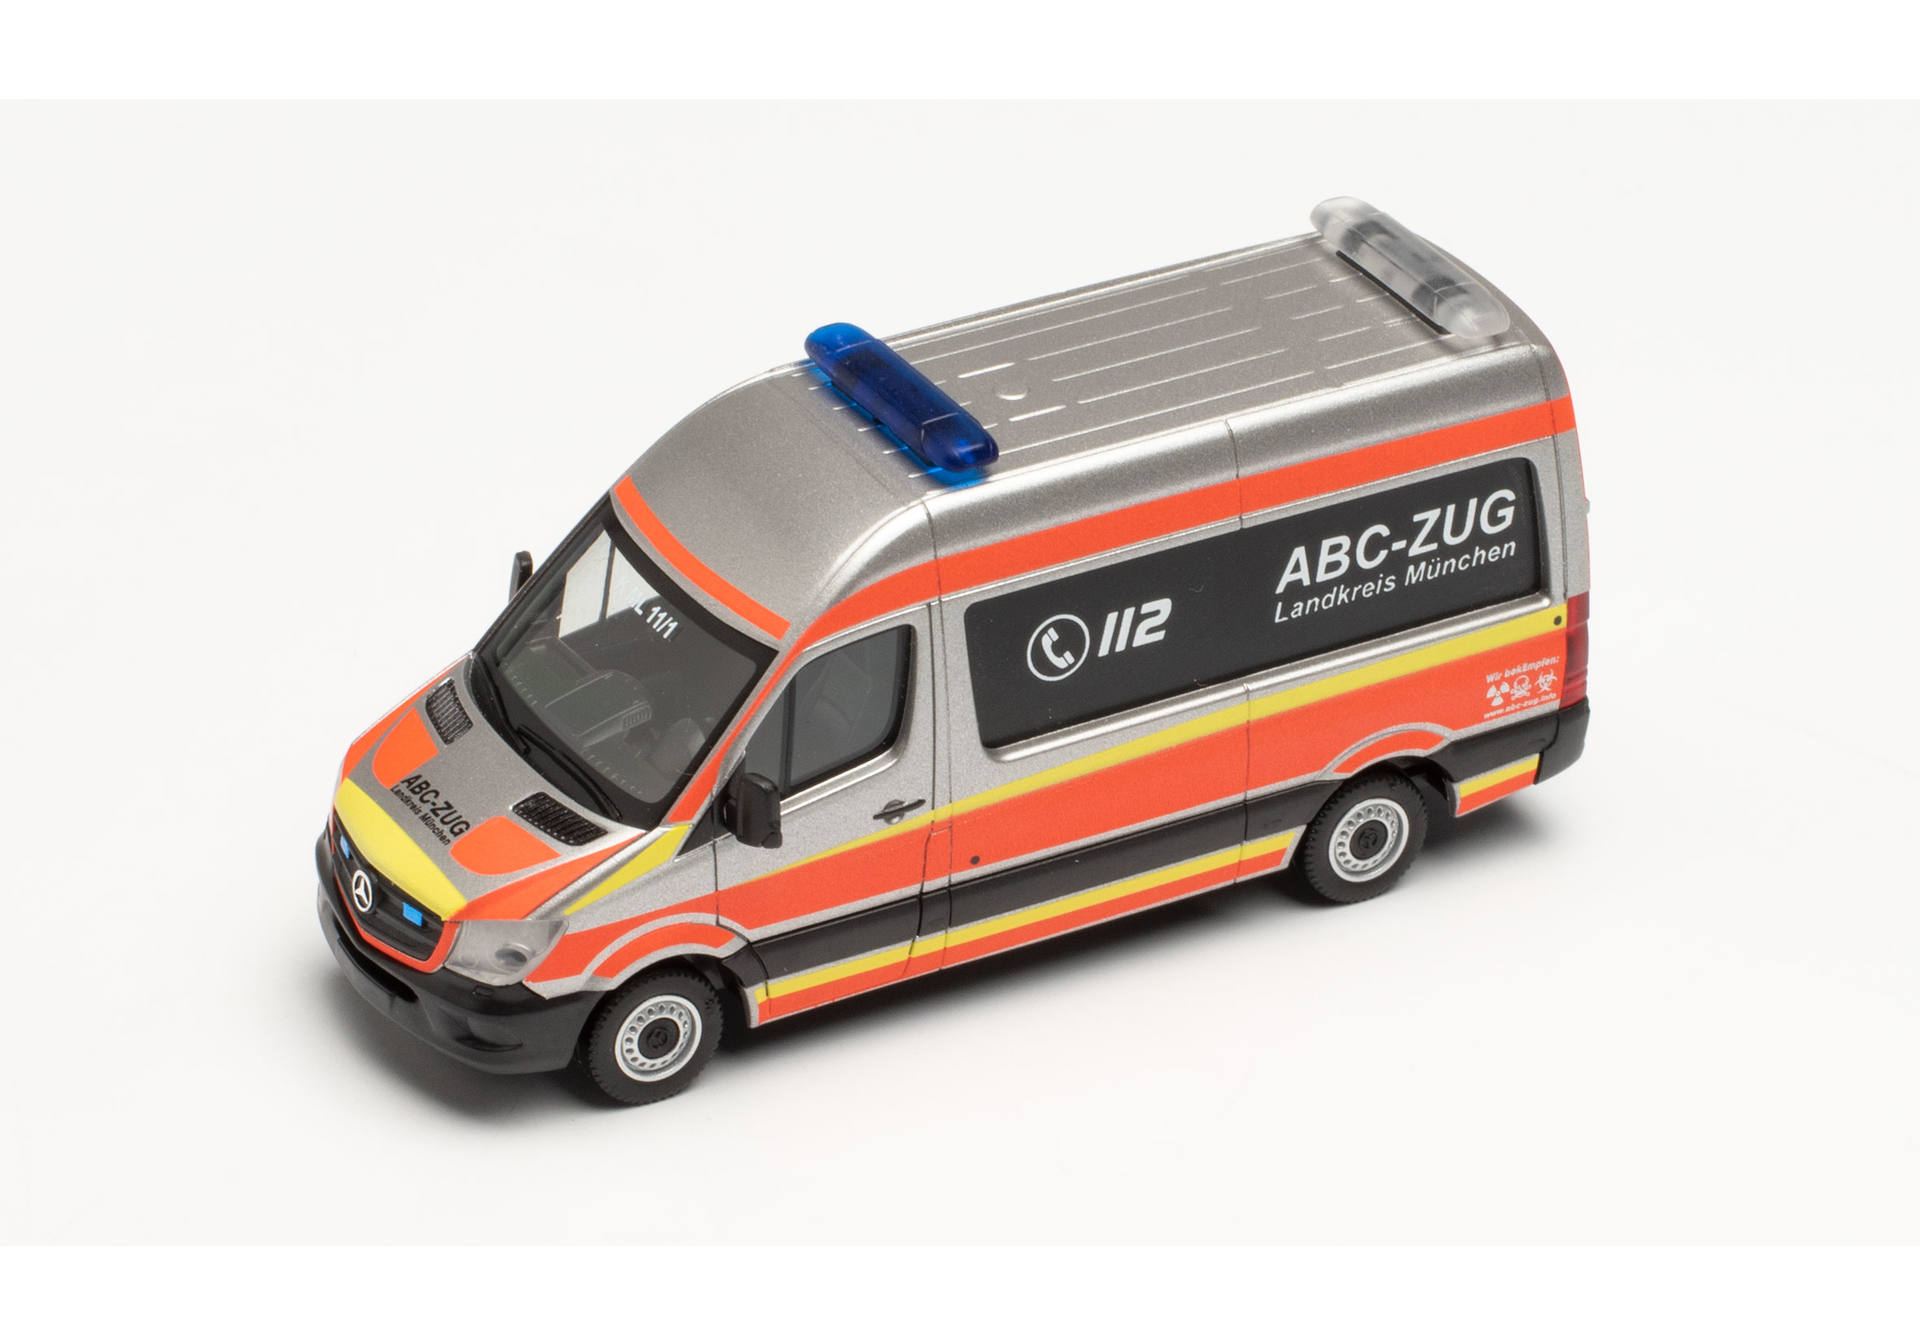 Mercedes-Benz Sprinter `13 Bus HD „ABC-Zug Landkreis München“